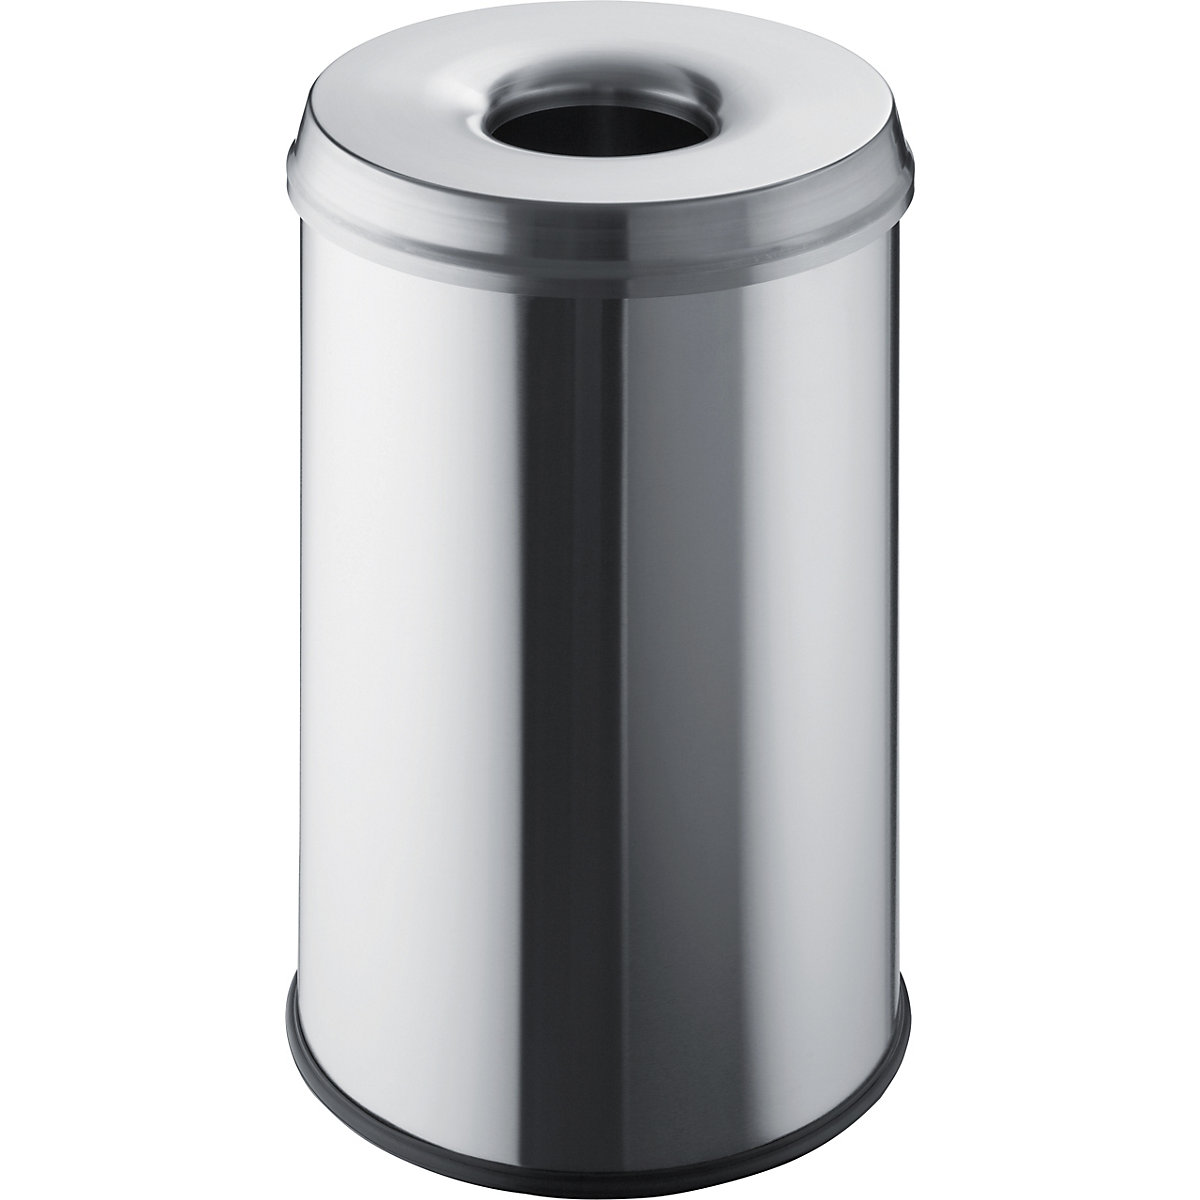 Coletor de lixo de segurança – helit, volume 30 l, AxØ 470 x 335 mm, aço inoxidável, embalagem de 2 unid.-1